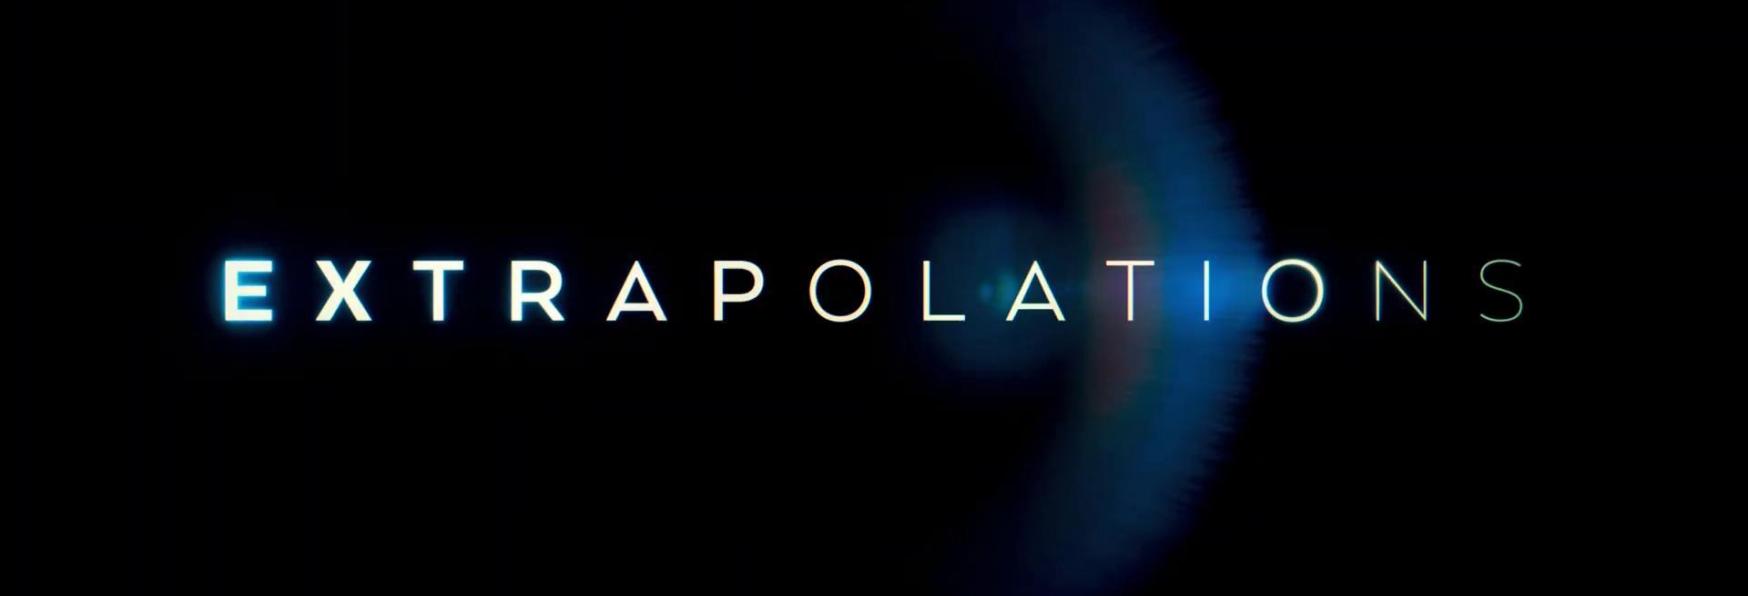 Extrapolations: Trama, Cast, Trailer e Data di Uscita della nuova Serie TV di Apple TV+